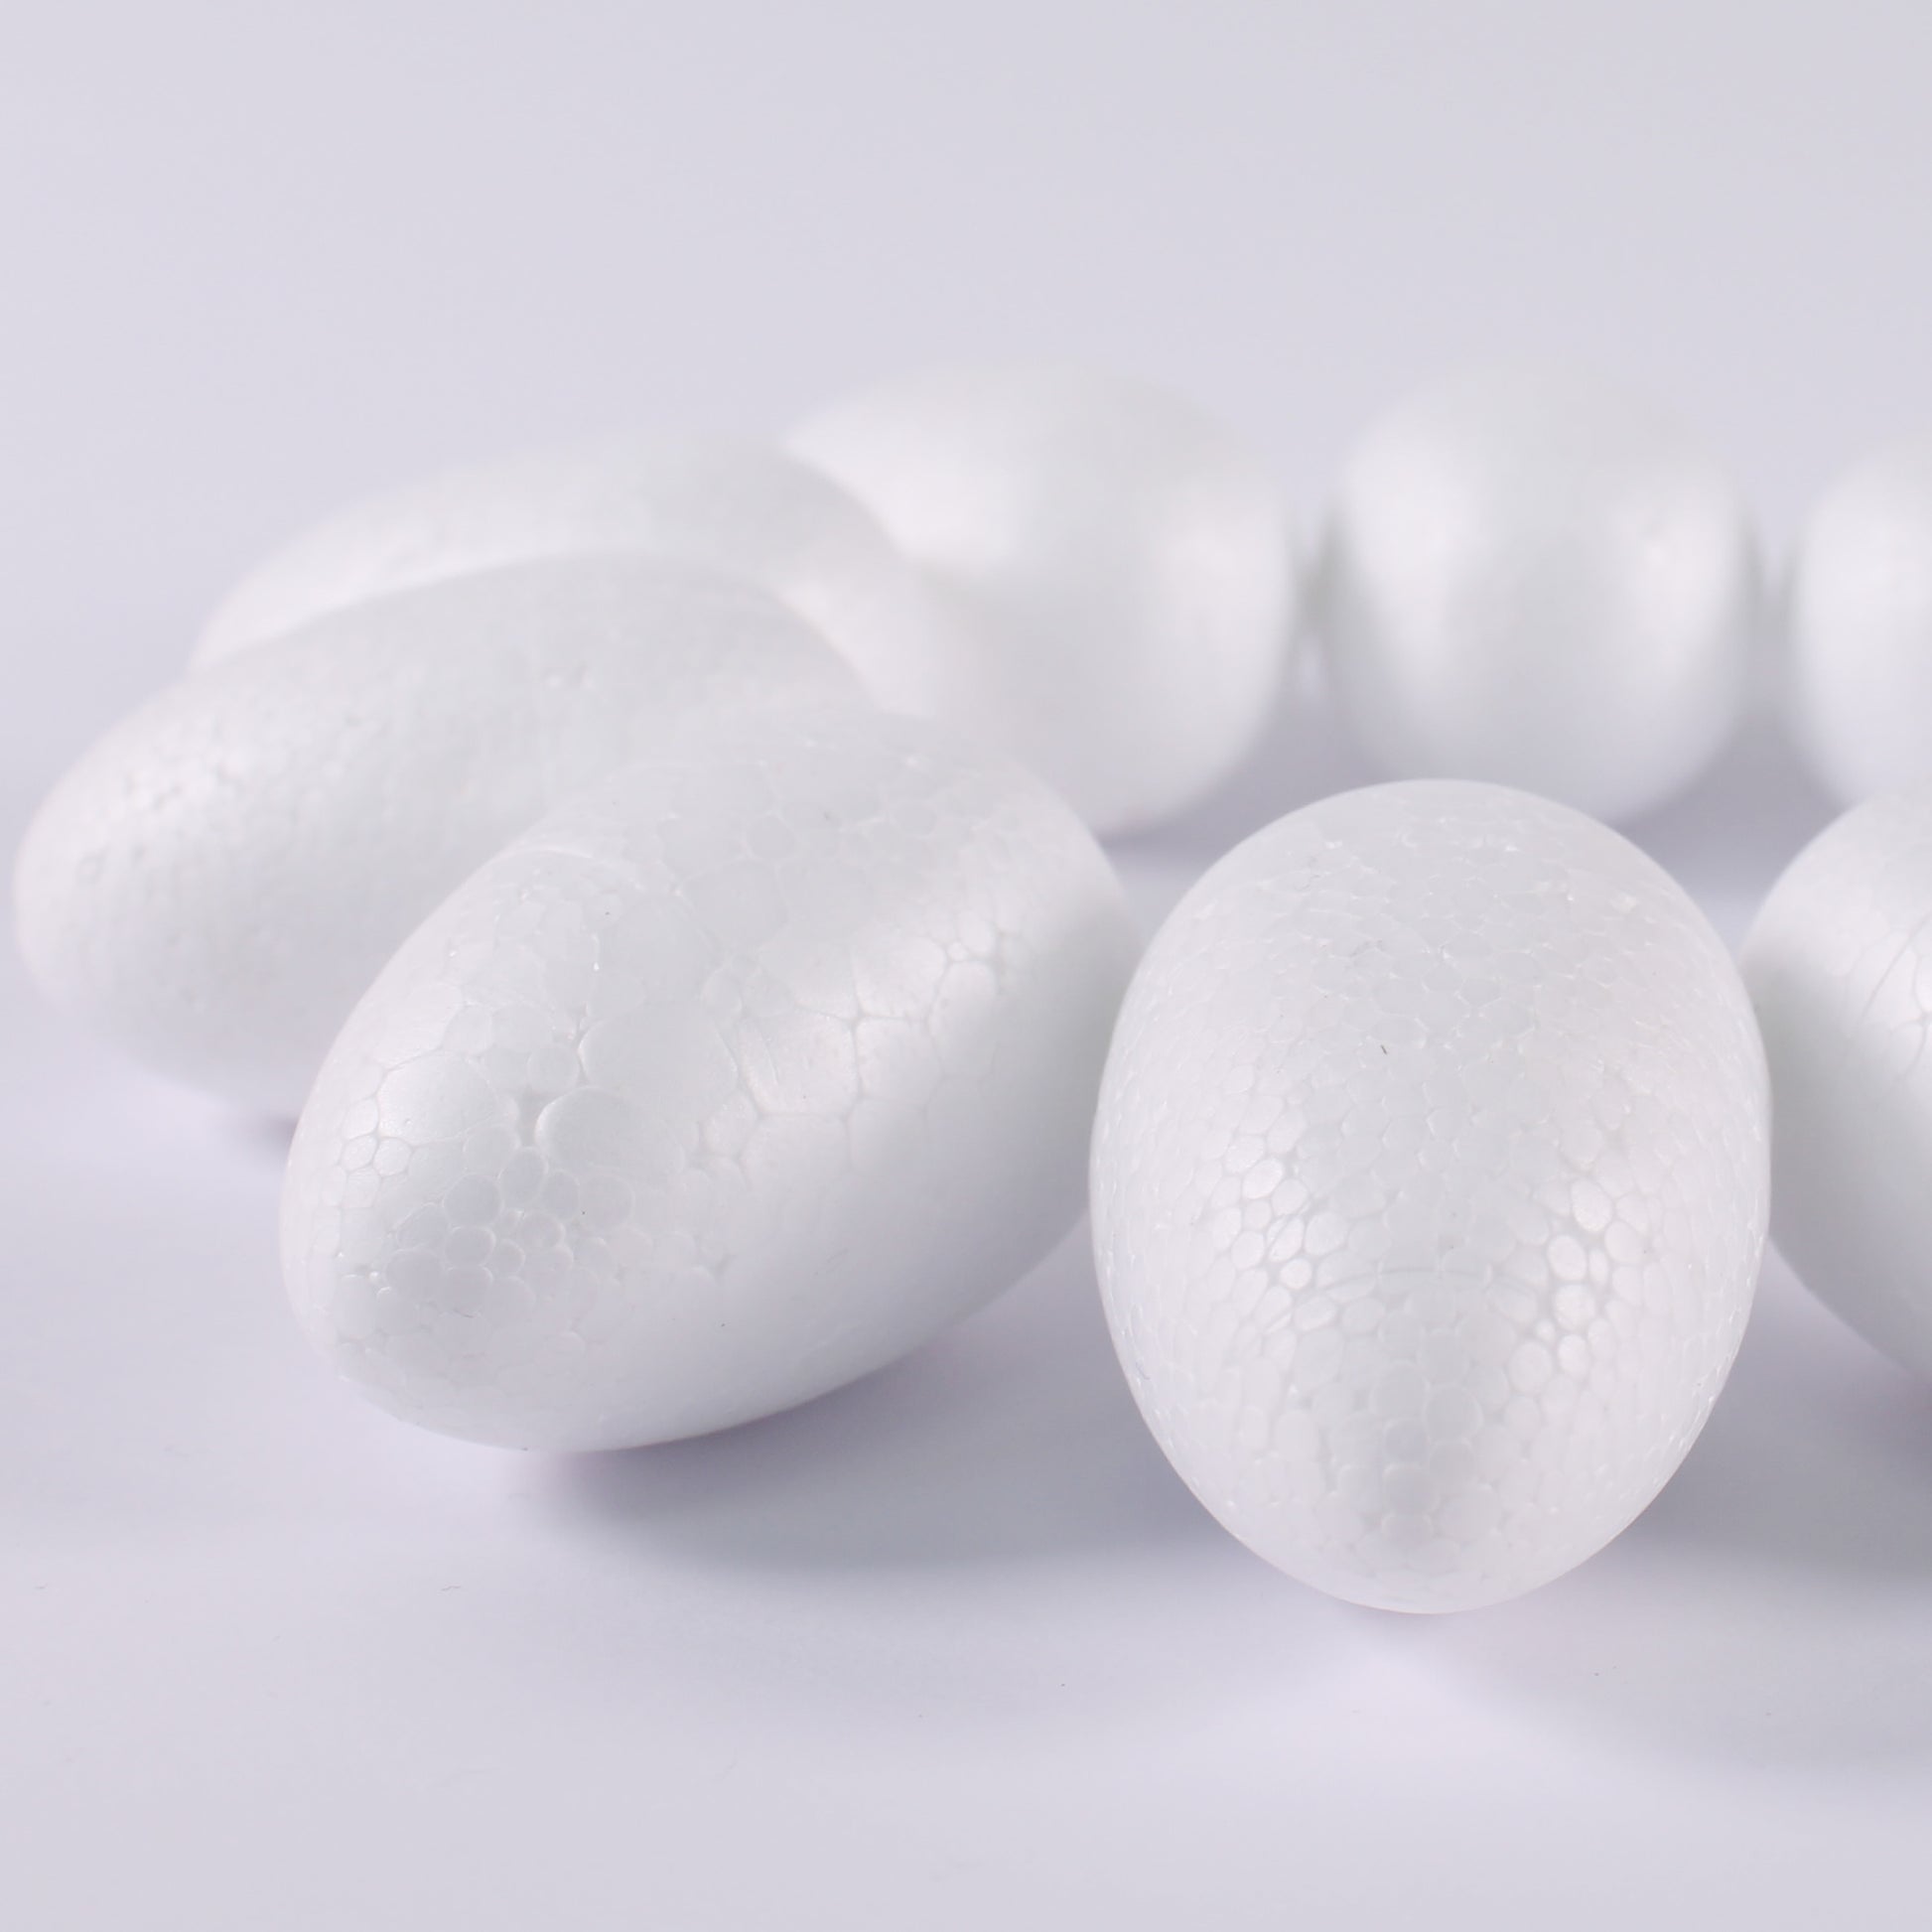  Polystyrene Eggs